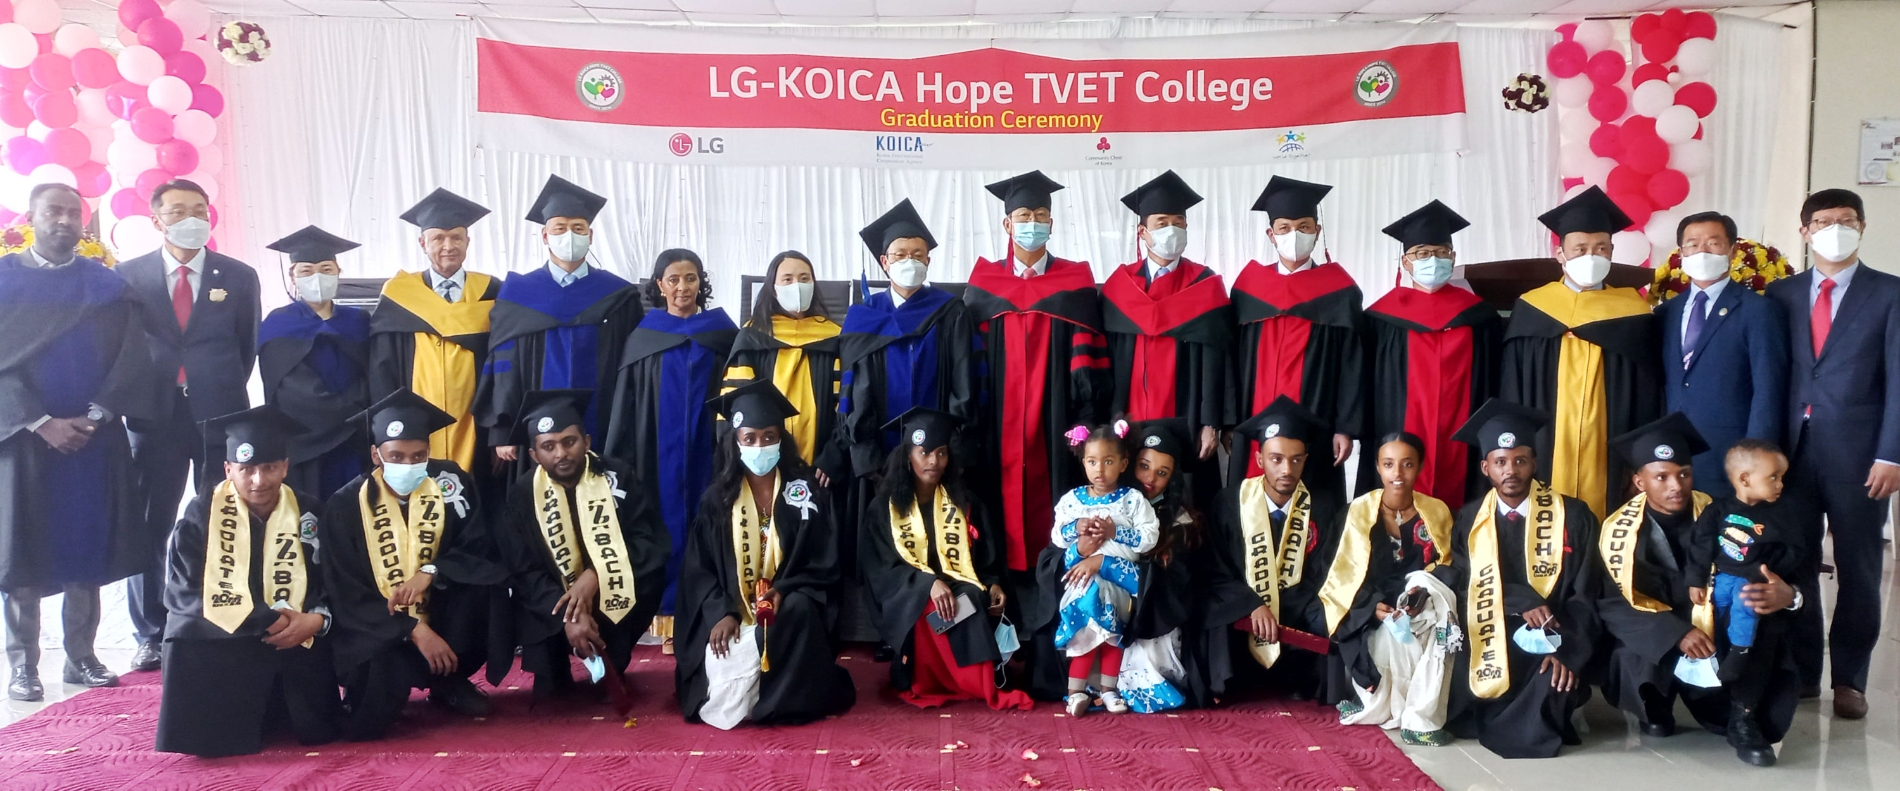 LG전자는 27일(현지시간) 에티오피아 수도 아디스아바바에서 열린 ‘제6회 LG-KOICA 희망직업훈련학교 졸업식’에 참석한 주요인사들이 졸업생들을 축하하고 있다. 사진=LG전자